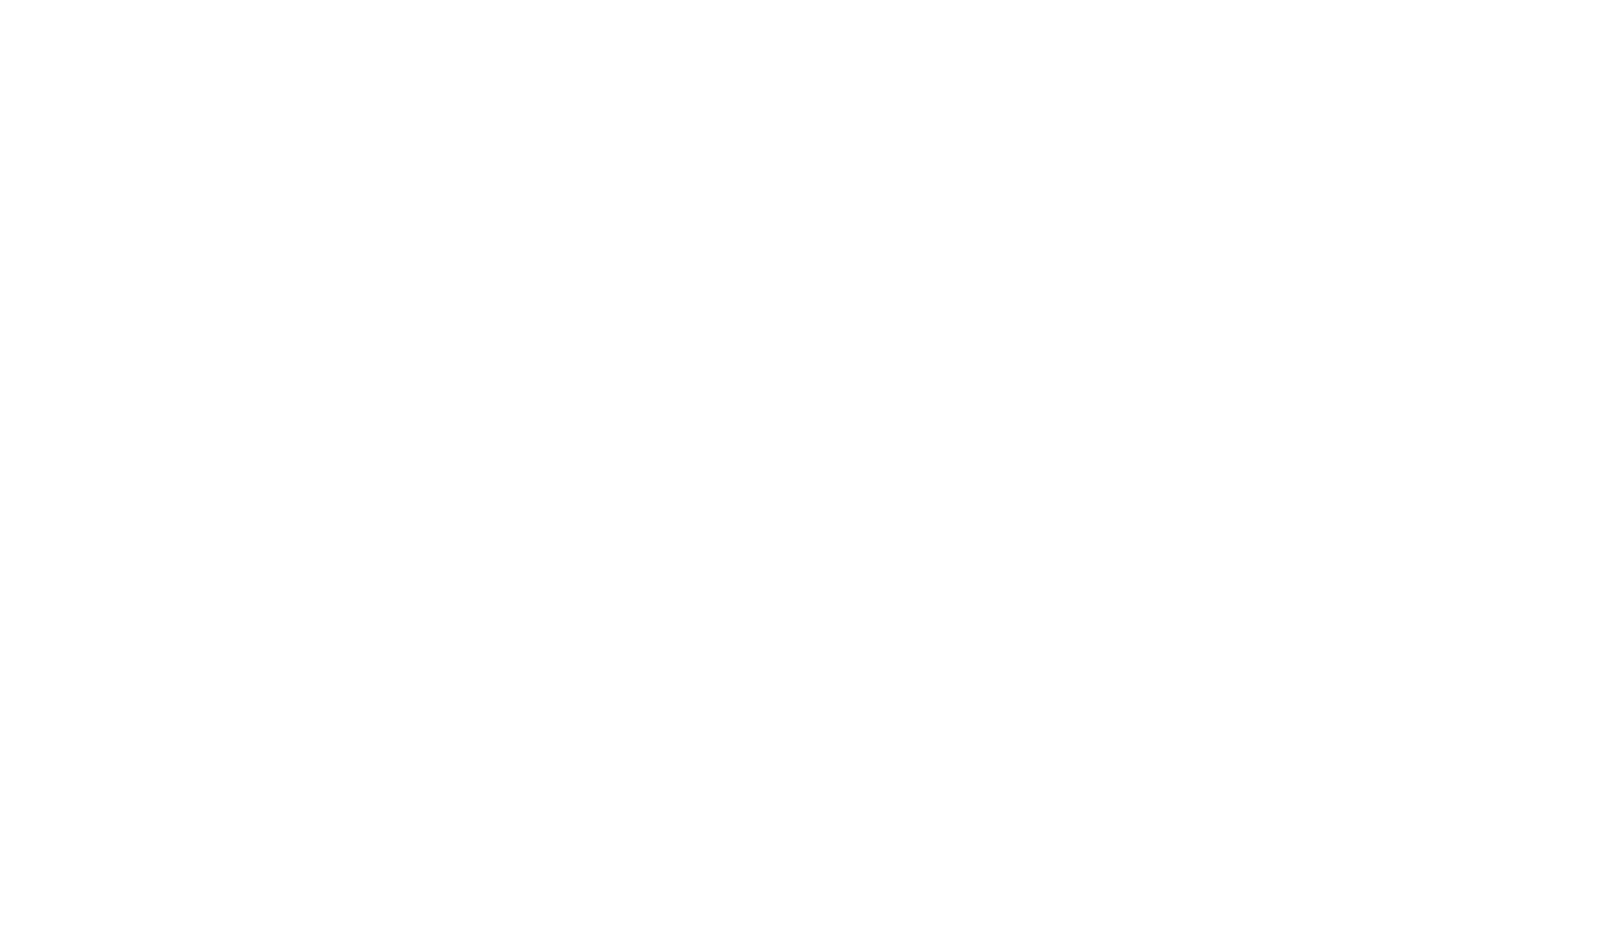 Banca Generali logo for dark backgrounds (transparent PNG)